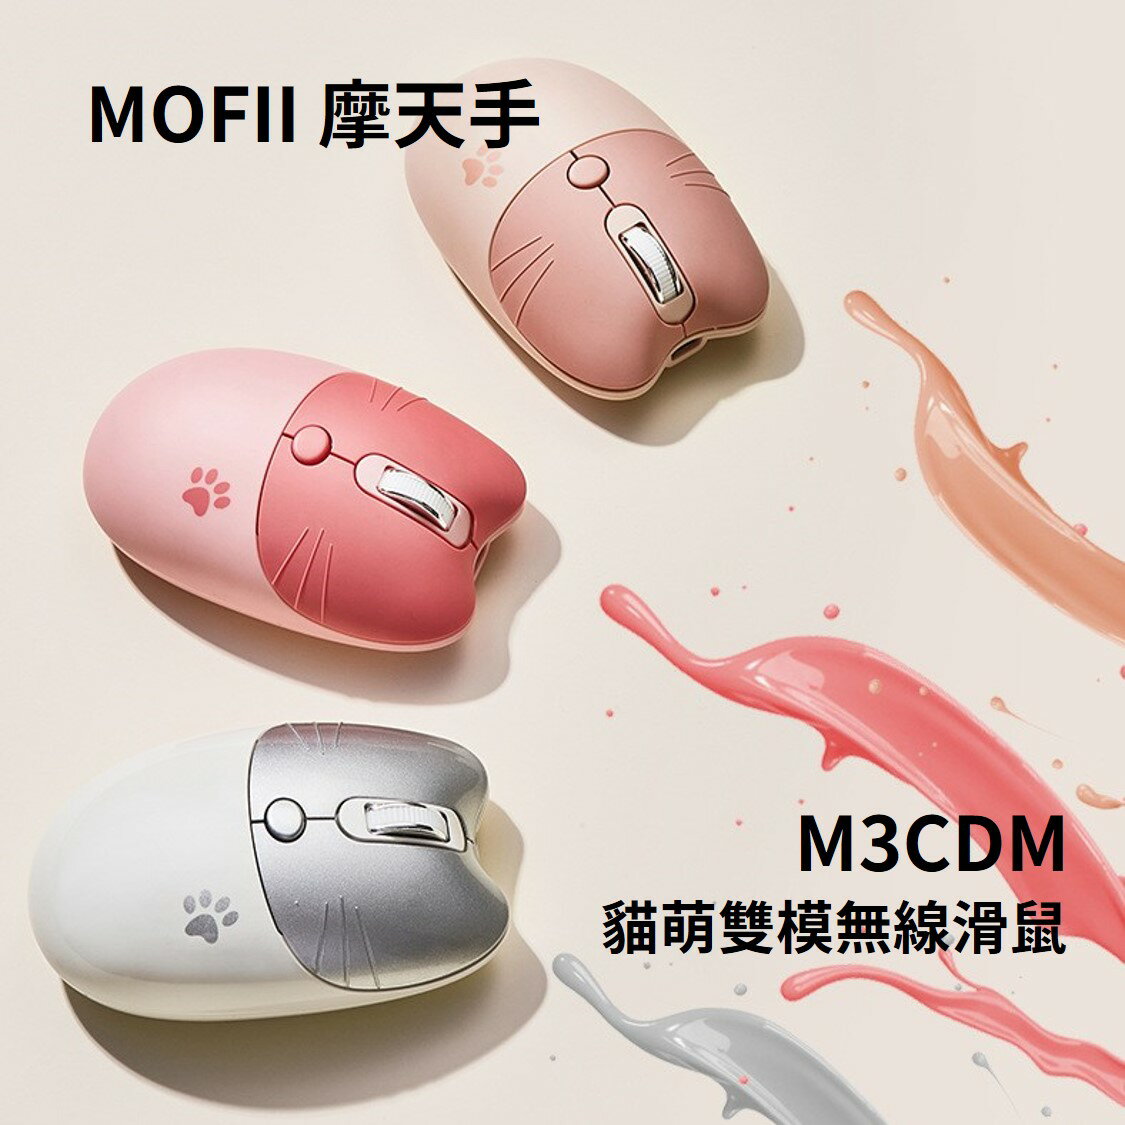 🔥MOFII 摩天手 M3CDM 貓萌雙模無線滑鼠 充電版 貓咪造型 馬卡龍色系